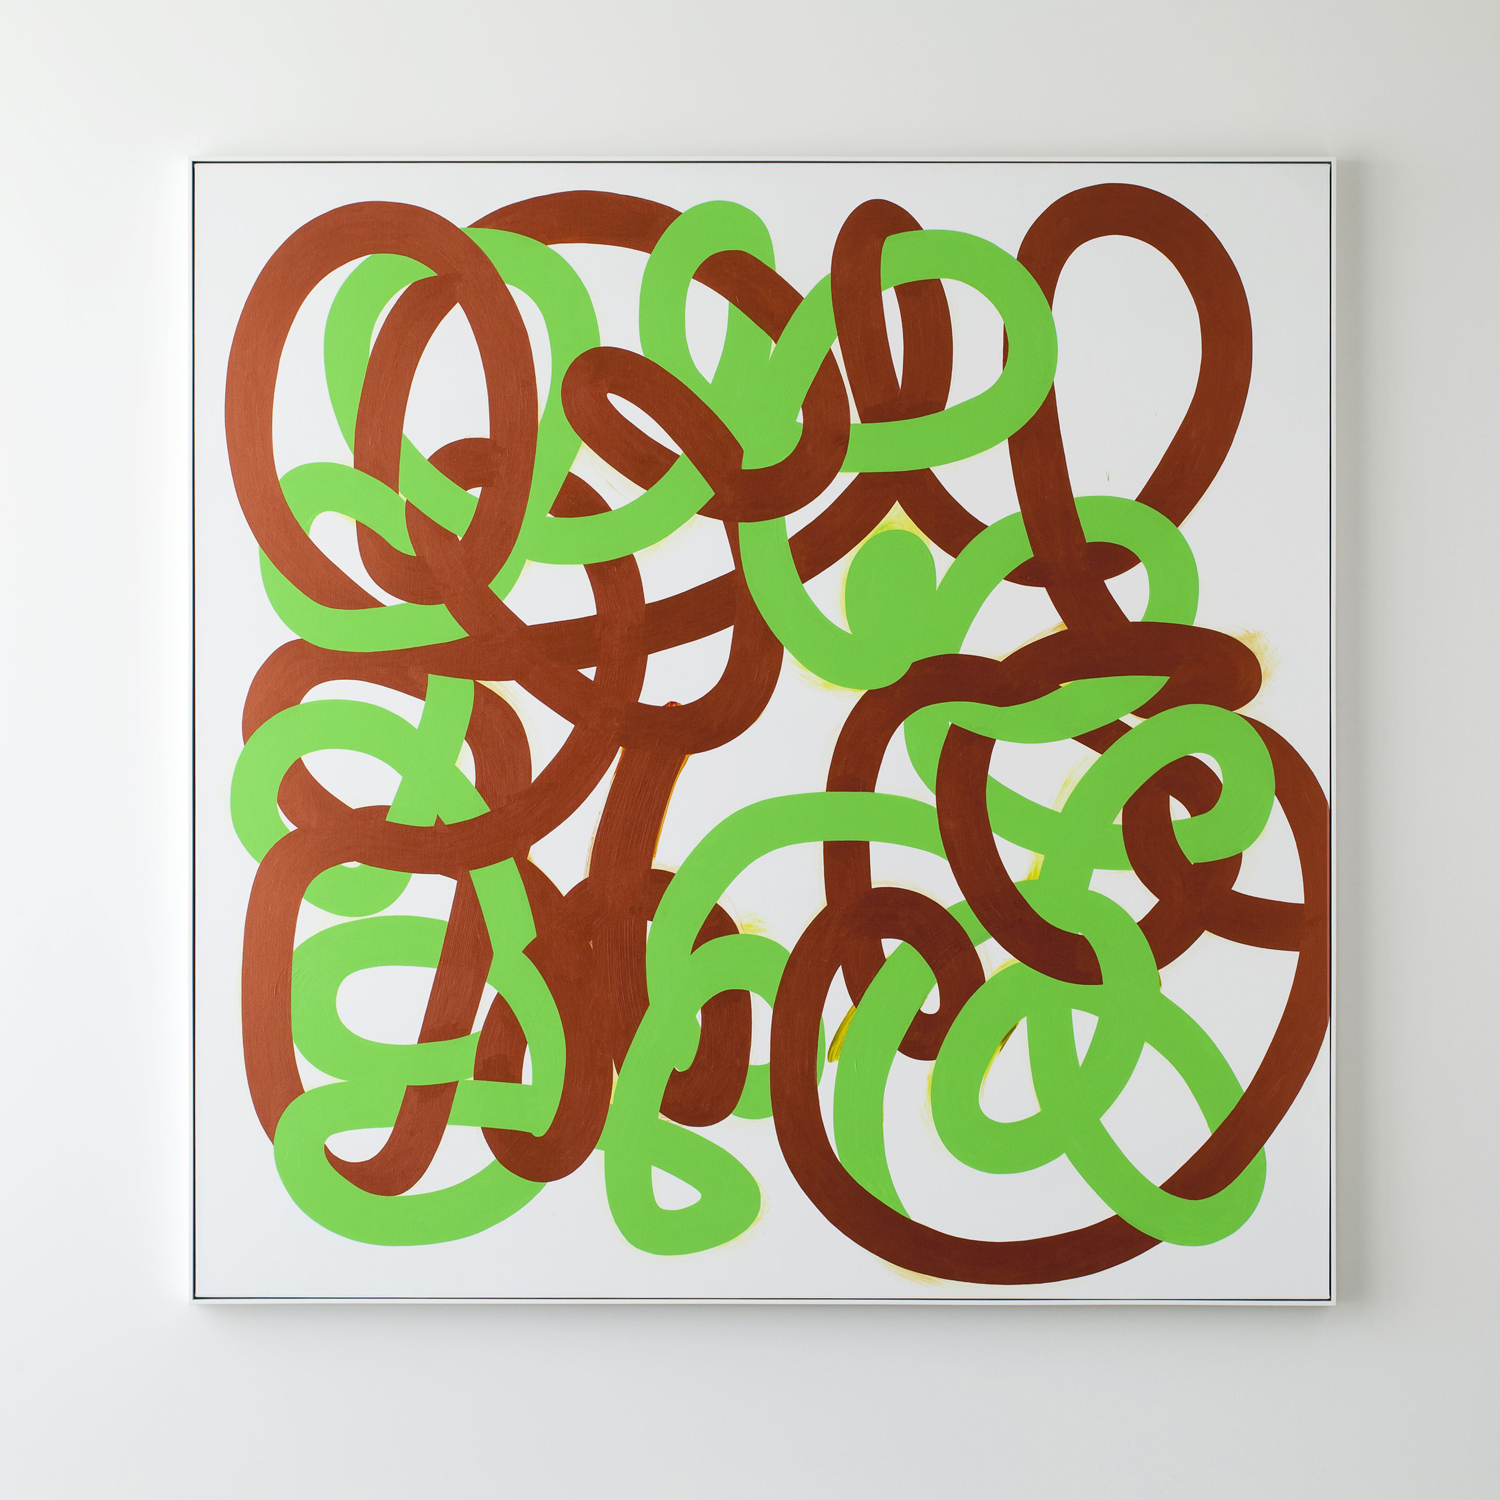    All In (Green/Bronze) &nbsp;&nbsp;2013&nbsp;  Acrylic on linen &nbsp; 185 x 185cm 